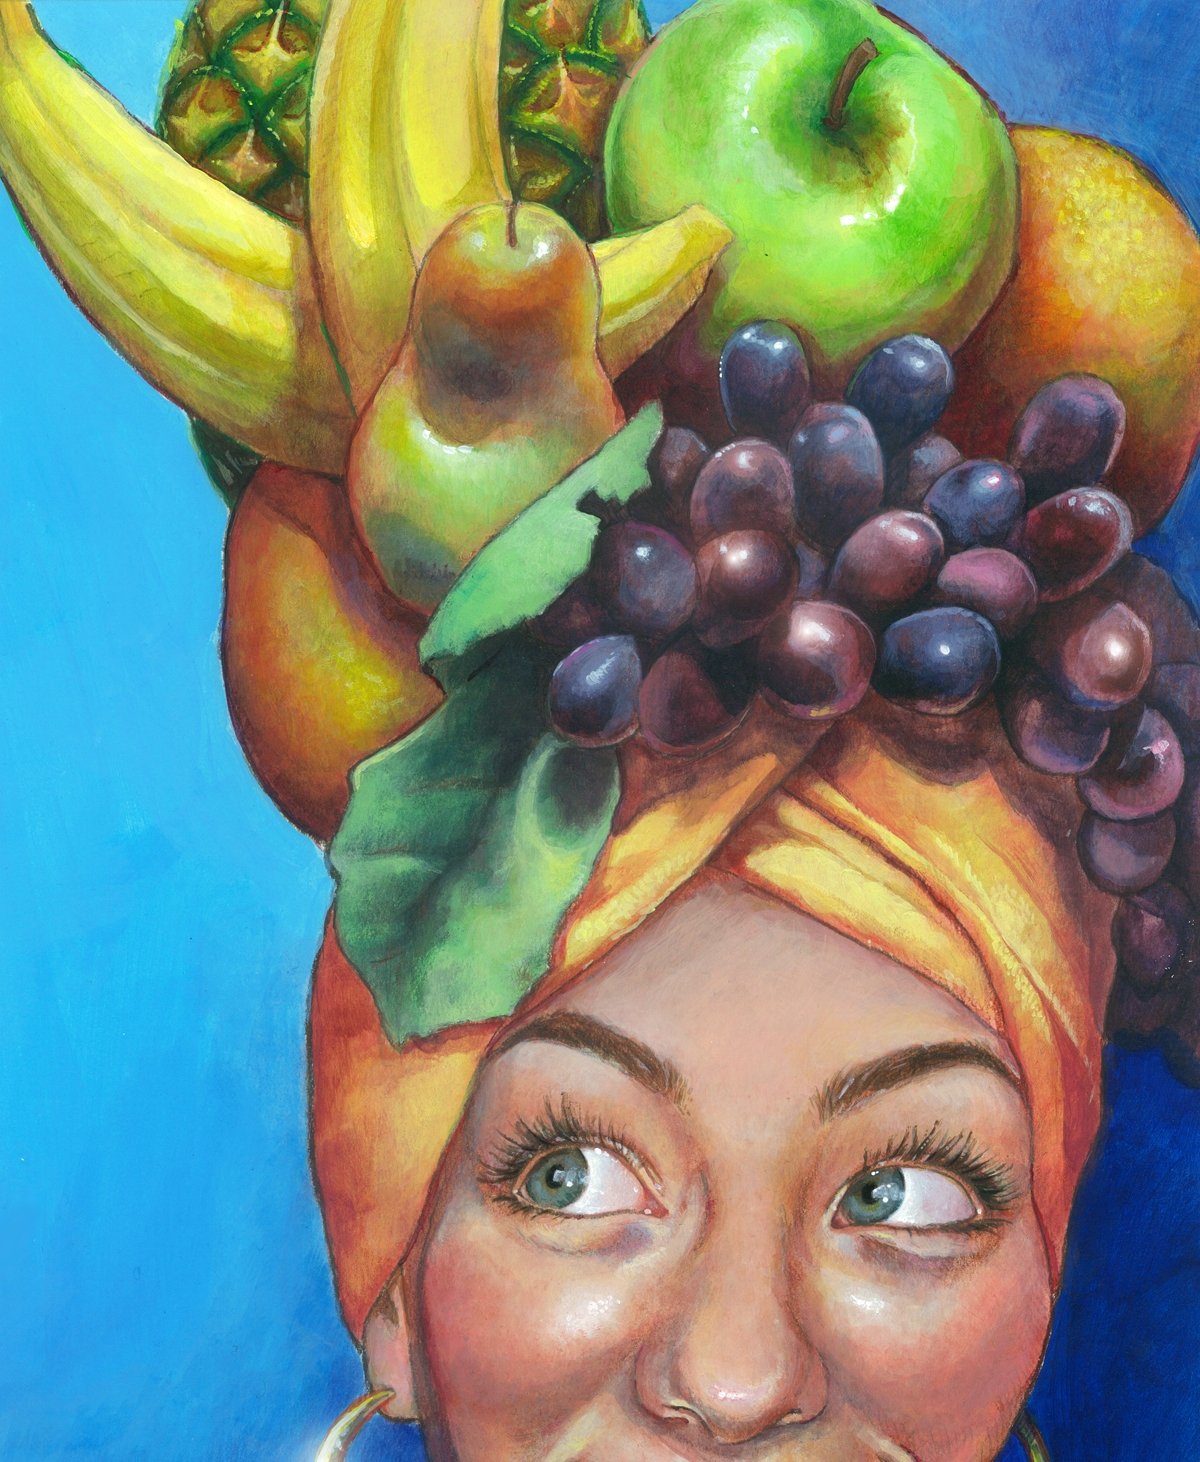 Фрукт чел. Женщина с фруктами на голове. Девушка с фруктамитна голове. Портрет человека из овощей и фруктов. Портрет из фруктов рисунок.